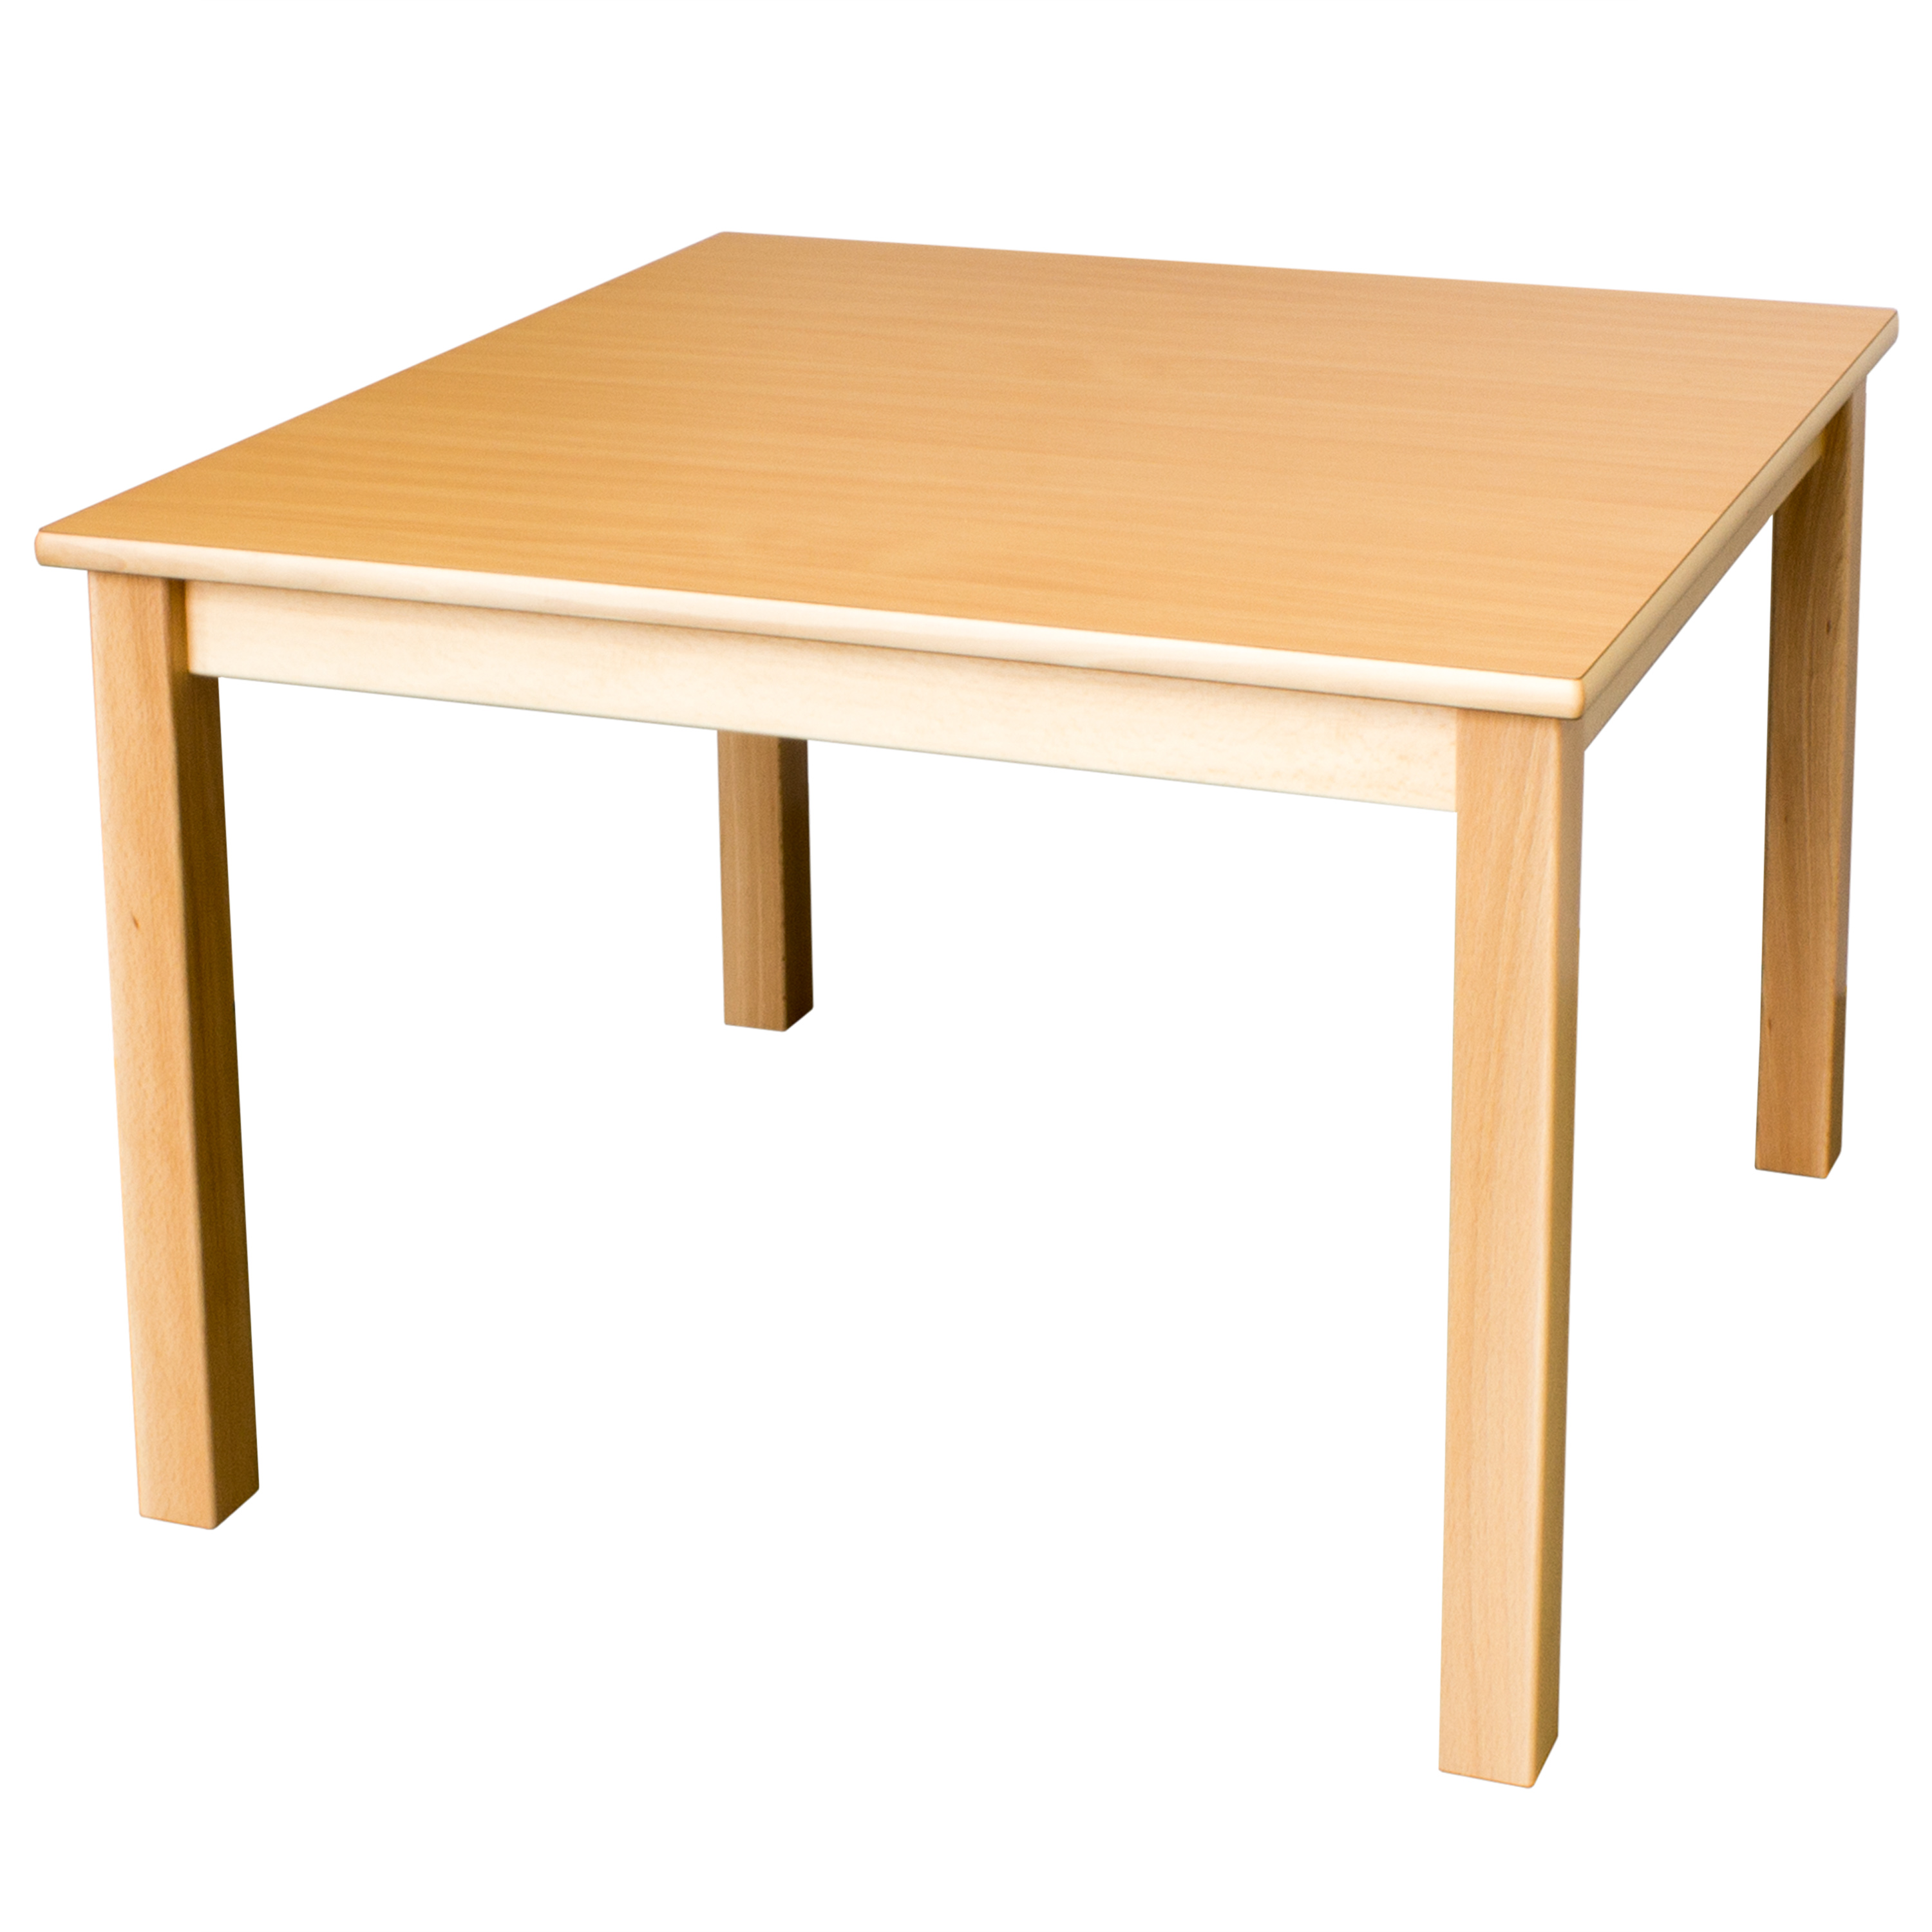 Quadrattisch in der Größe, 80 x 80 cm, Tischhöhe 40 cm